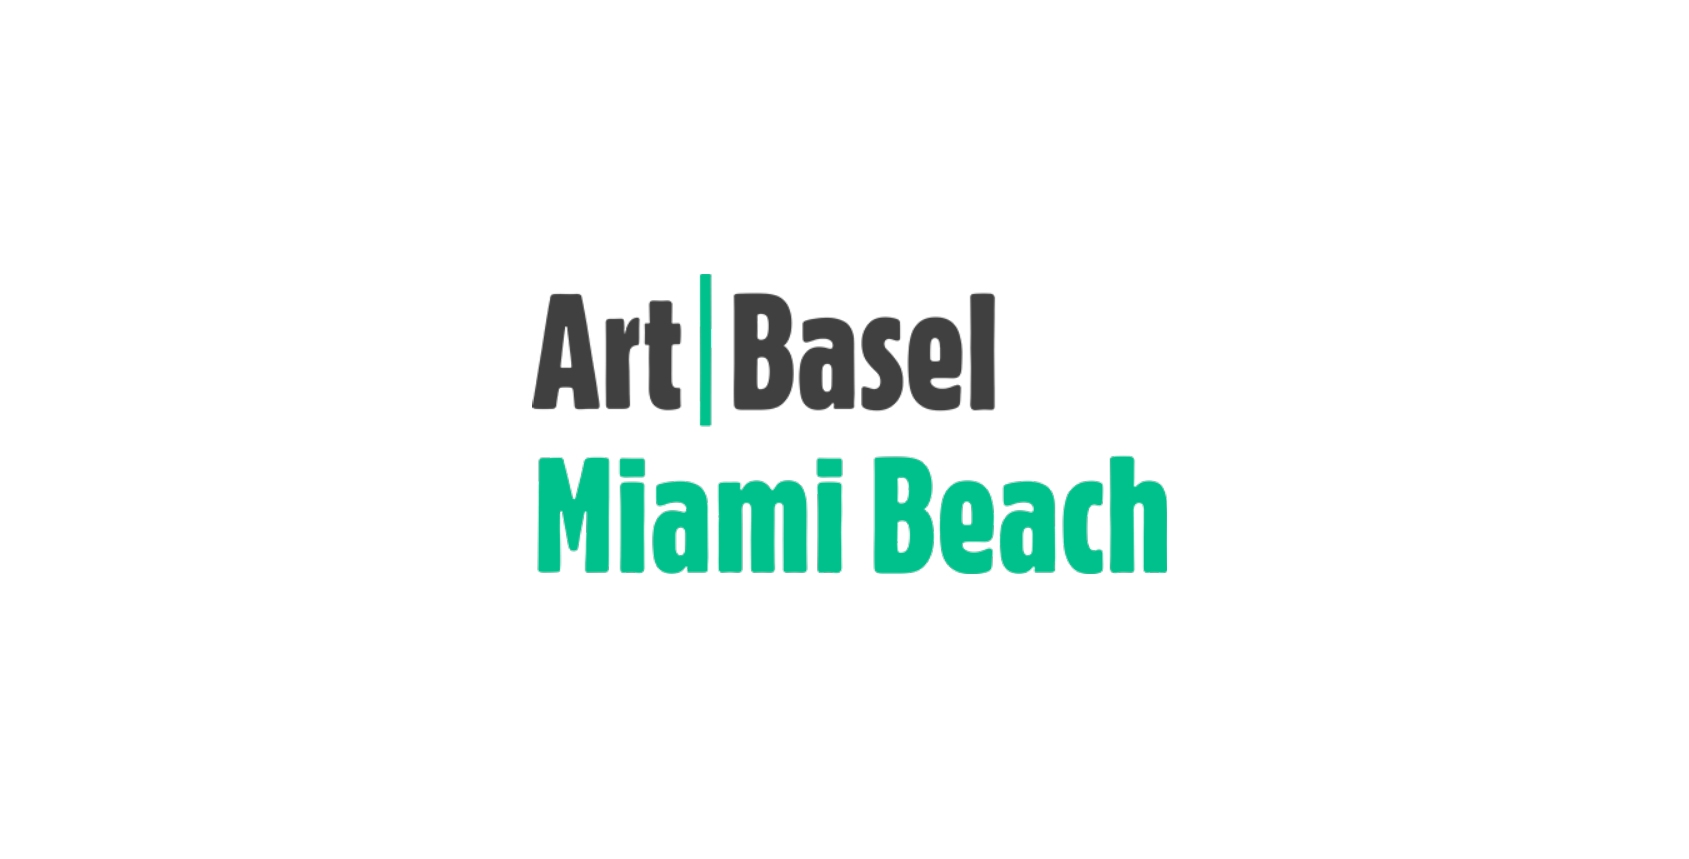  Art Basel Miami Beach